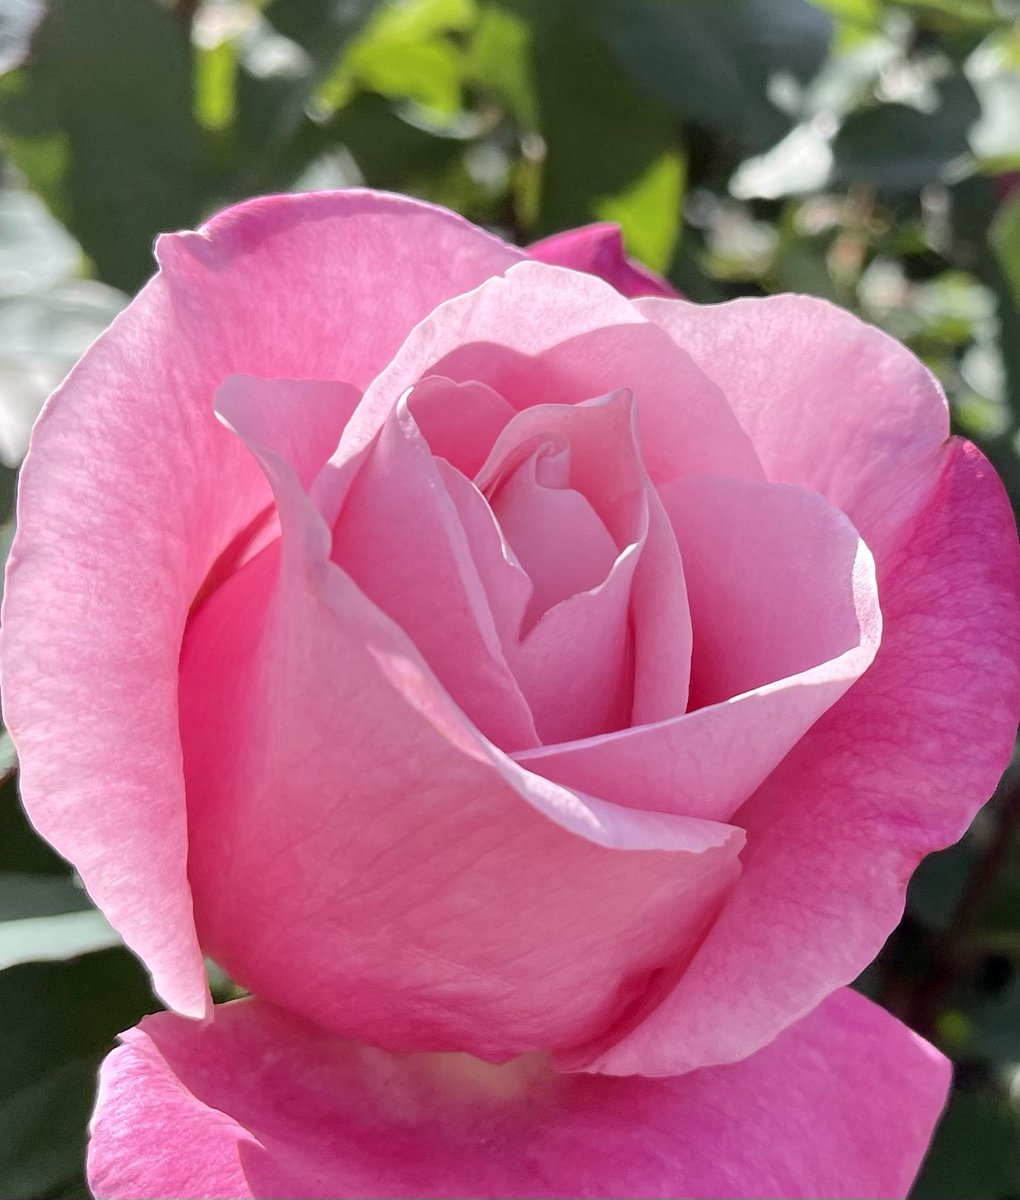 薔薇は「ベルナールビュッフェ」🌹
( Rose  Bernard Buffet )

素敵な午後を🌹🍀🌿
Have a peaceful and 
Good Afternoon for all with love ♪ 

#roses
#BernardBuffet
#Healing #flowers
#gardening
#花写真
#TLを花でいっぱいにしよう